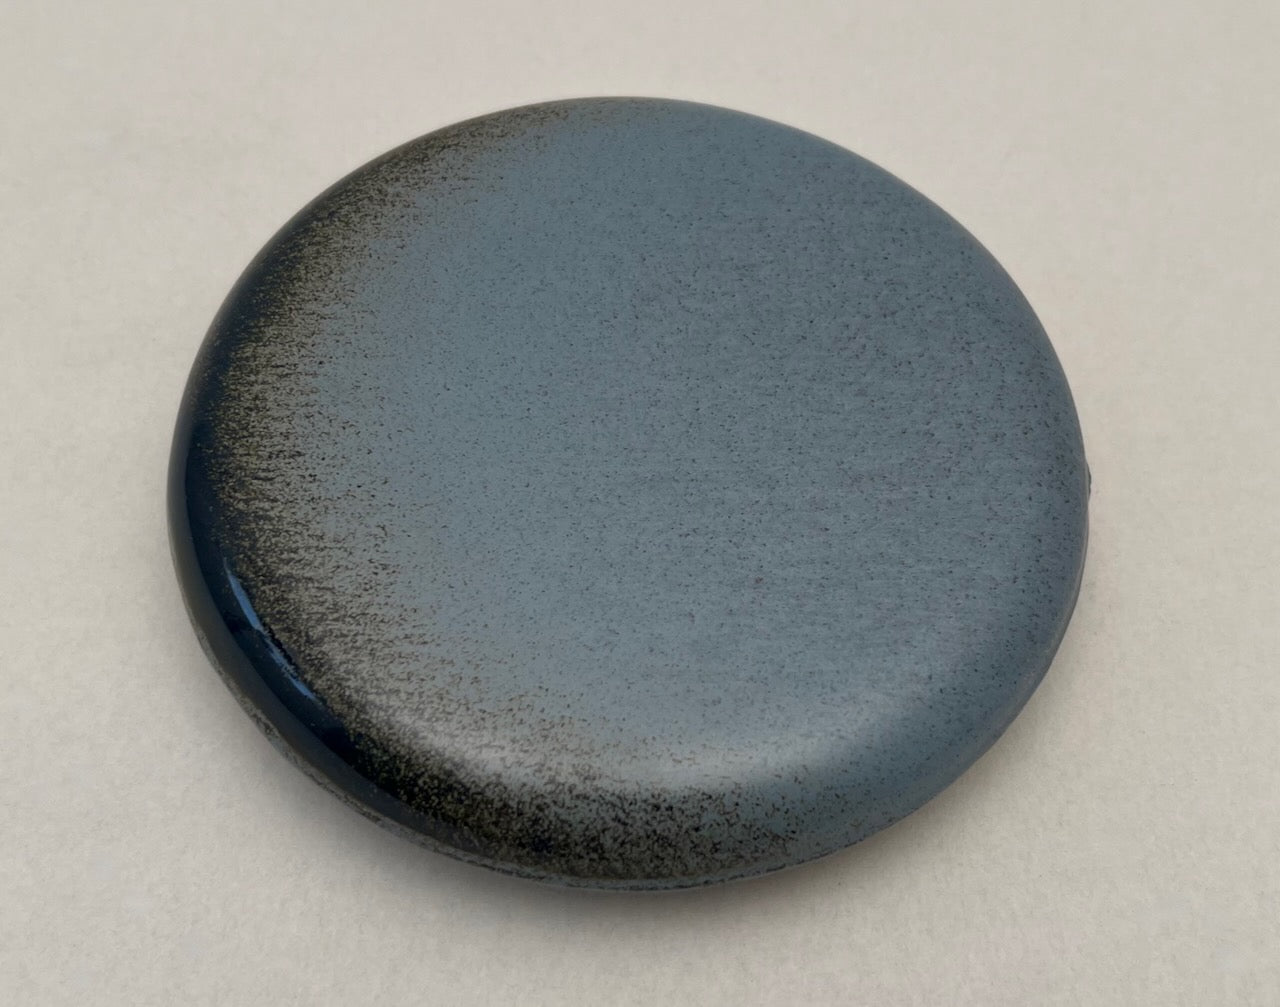 Reinigungskachel rustikblau Putzdeckel für Kachelofen rund 15 cm